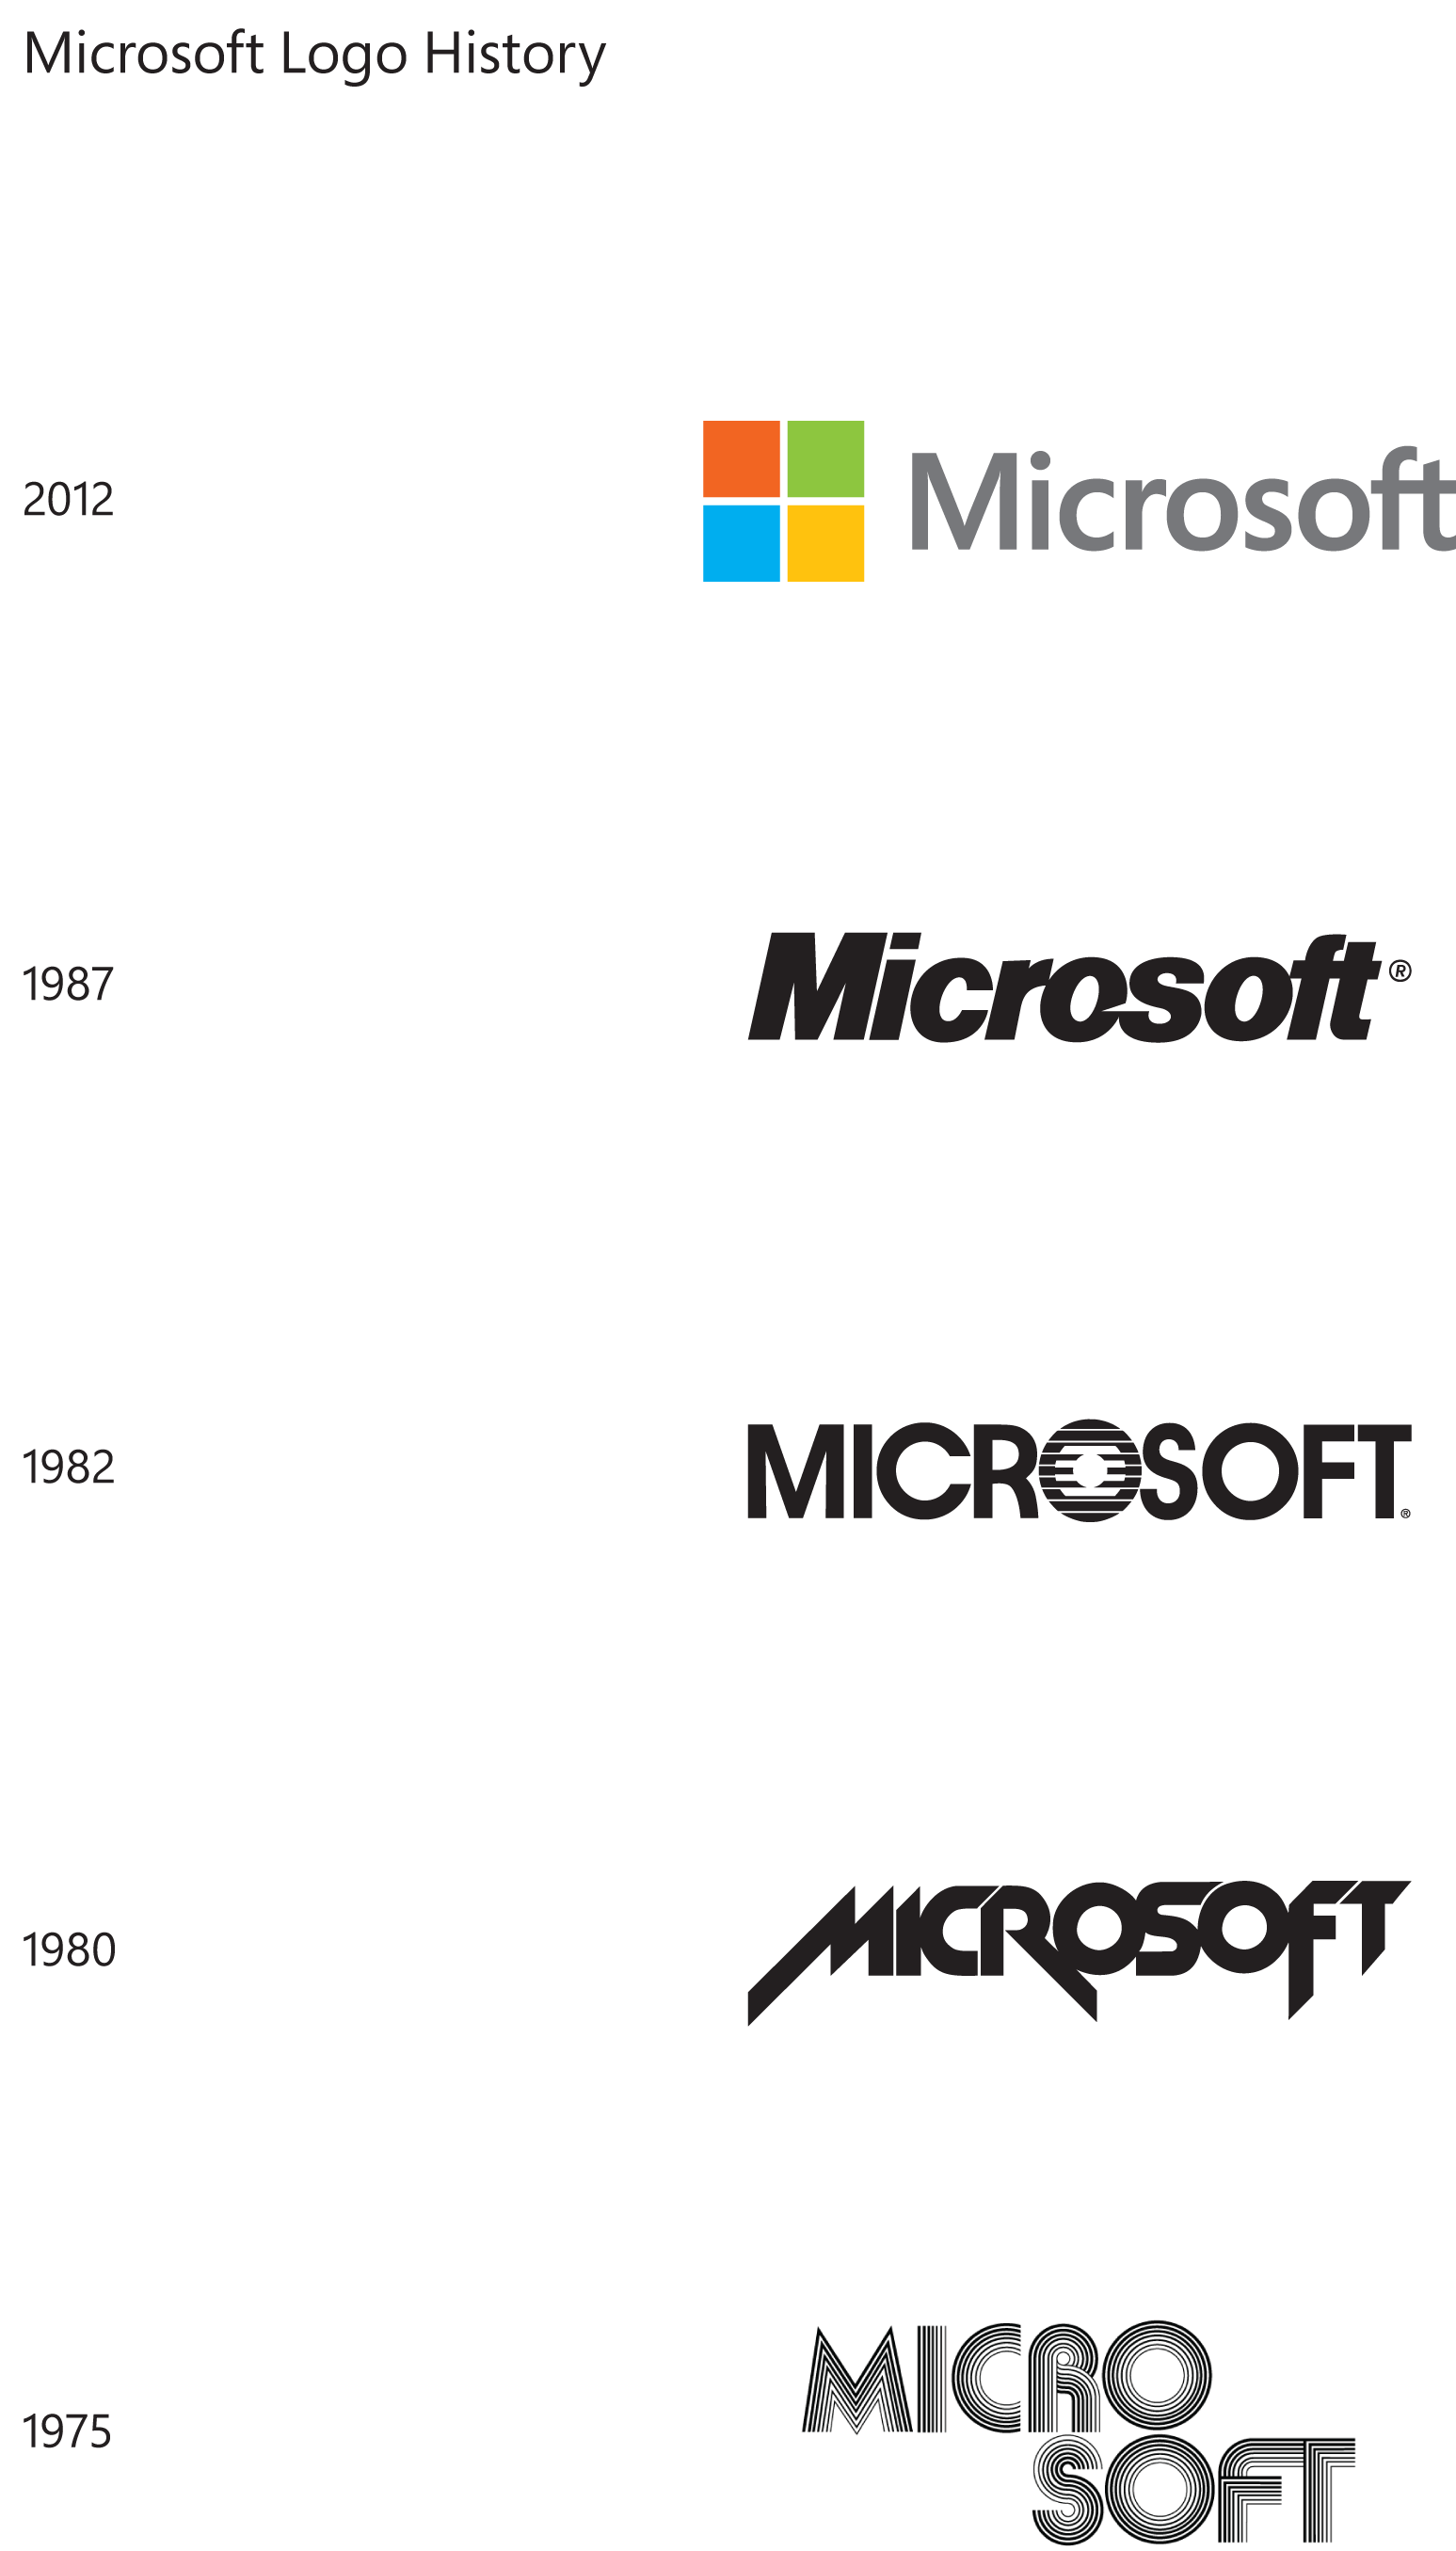 Fun Microsoft Logo - File:Microsoft logo history (from Microsoft).png - Wikimedia Commons